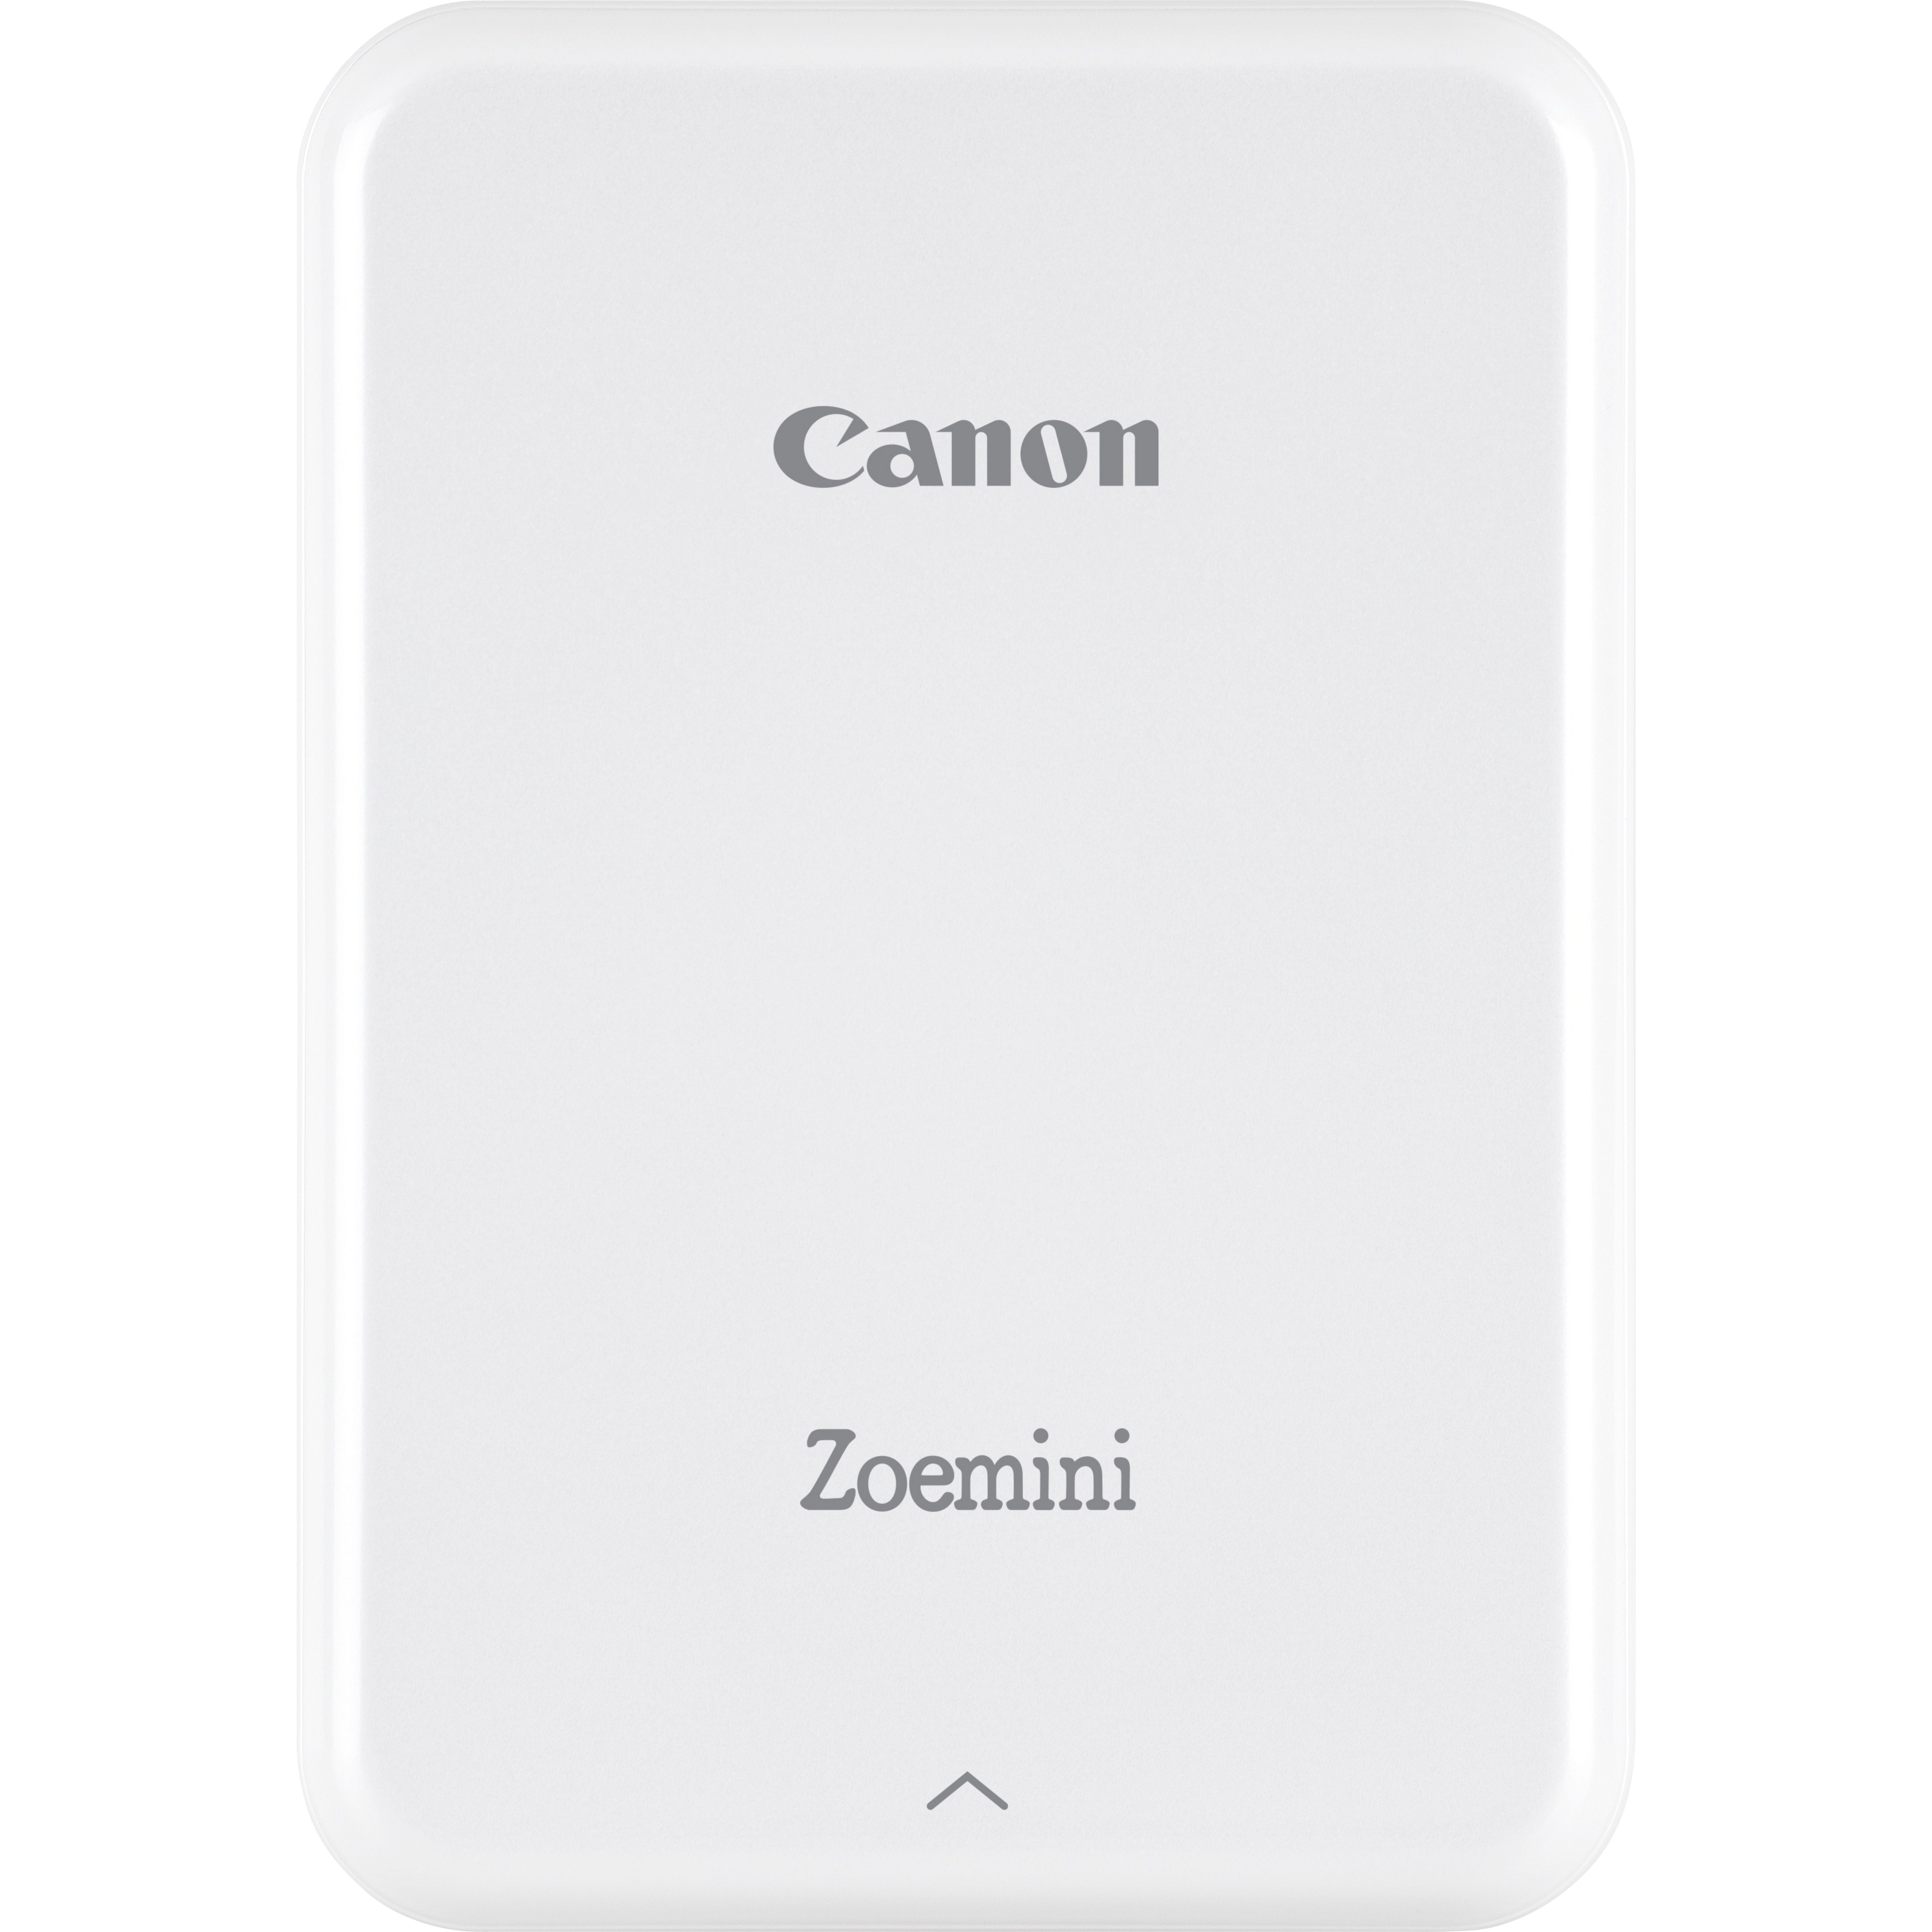 Canon Stampante fotografica portatile Zoemini, bianca [3204C006]